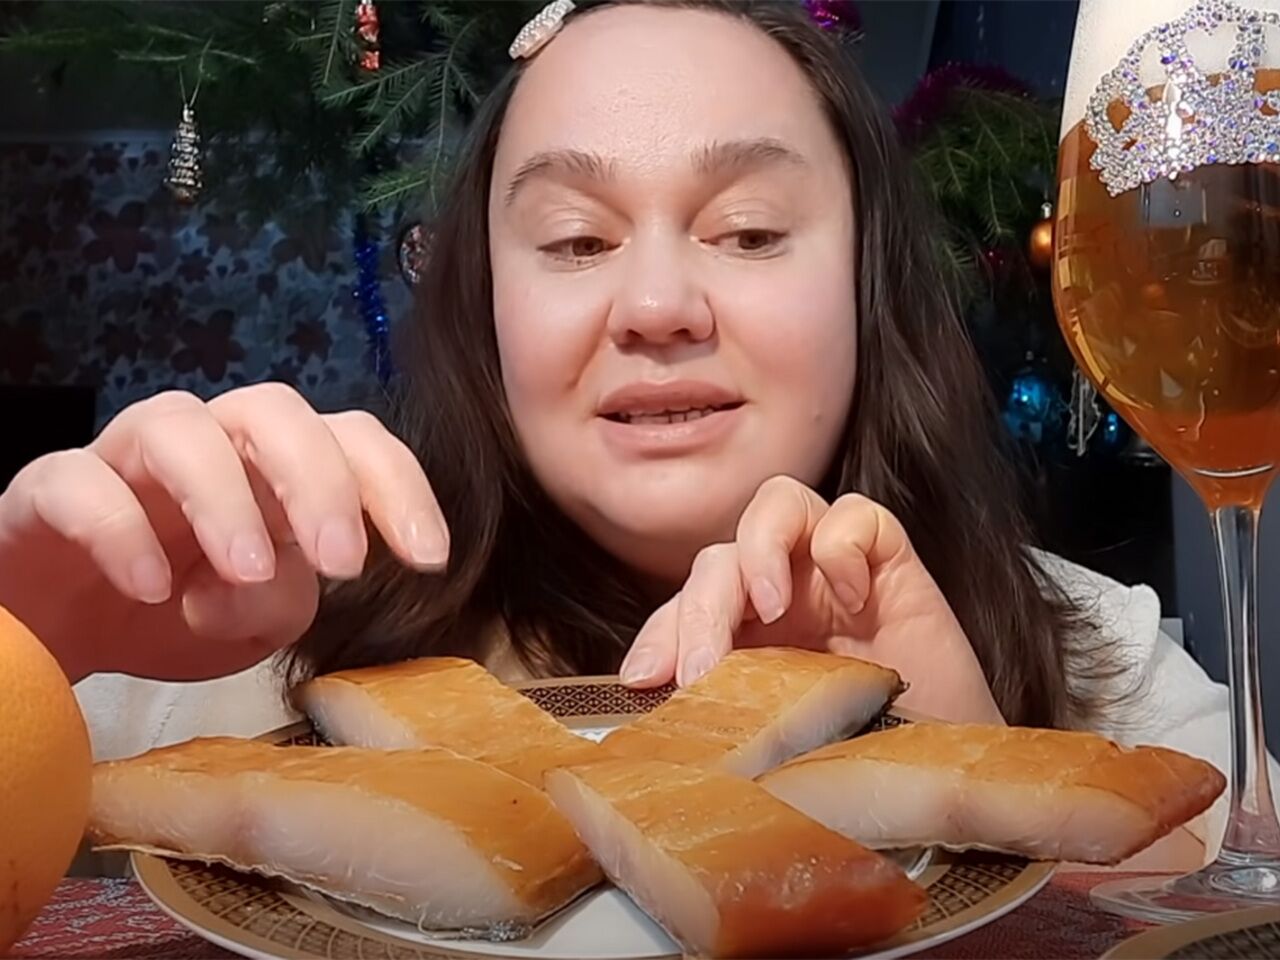 Нет, не тресну!» 38-летняя россиянка объедается и выпивает на камеру. Как это принесло ей всенародную любовь?: Интернет: Интернет и СМИ: Lenta.ru